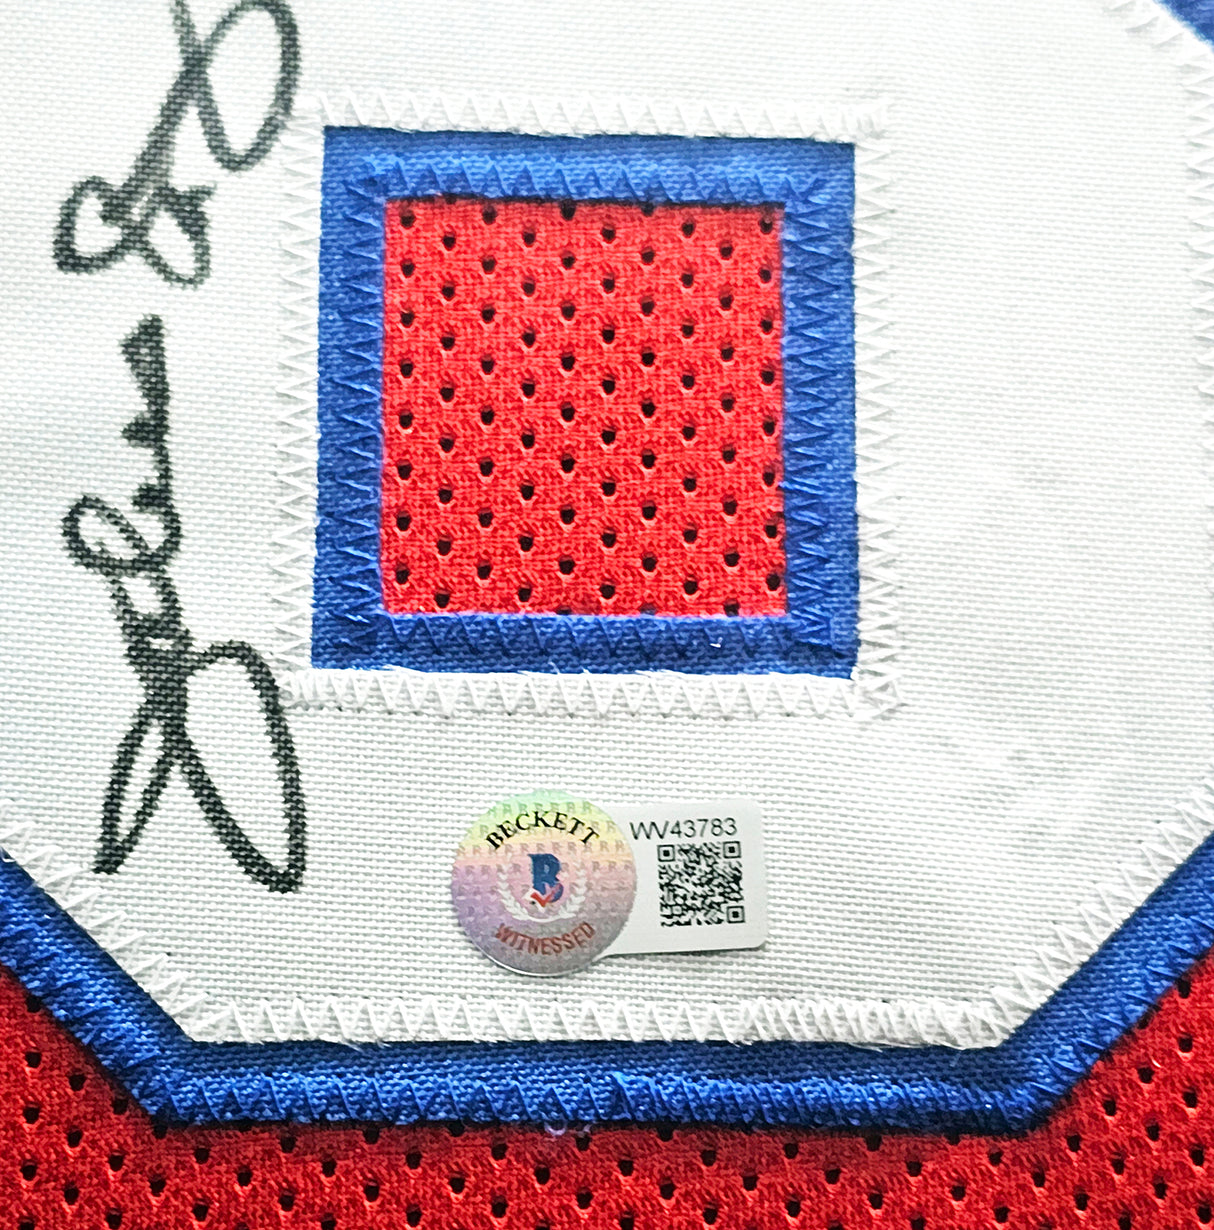 Philadelphia 76ers Julius "Dr. J" Erving Autographed Framed Red Jersey PSA/DNA Stock #215862